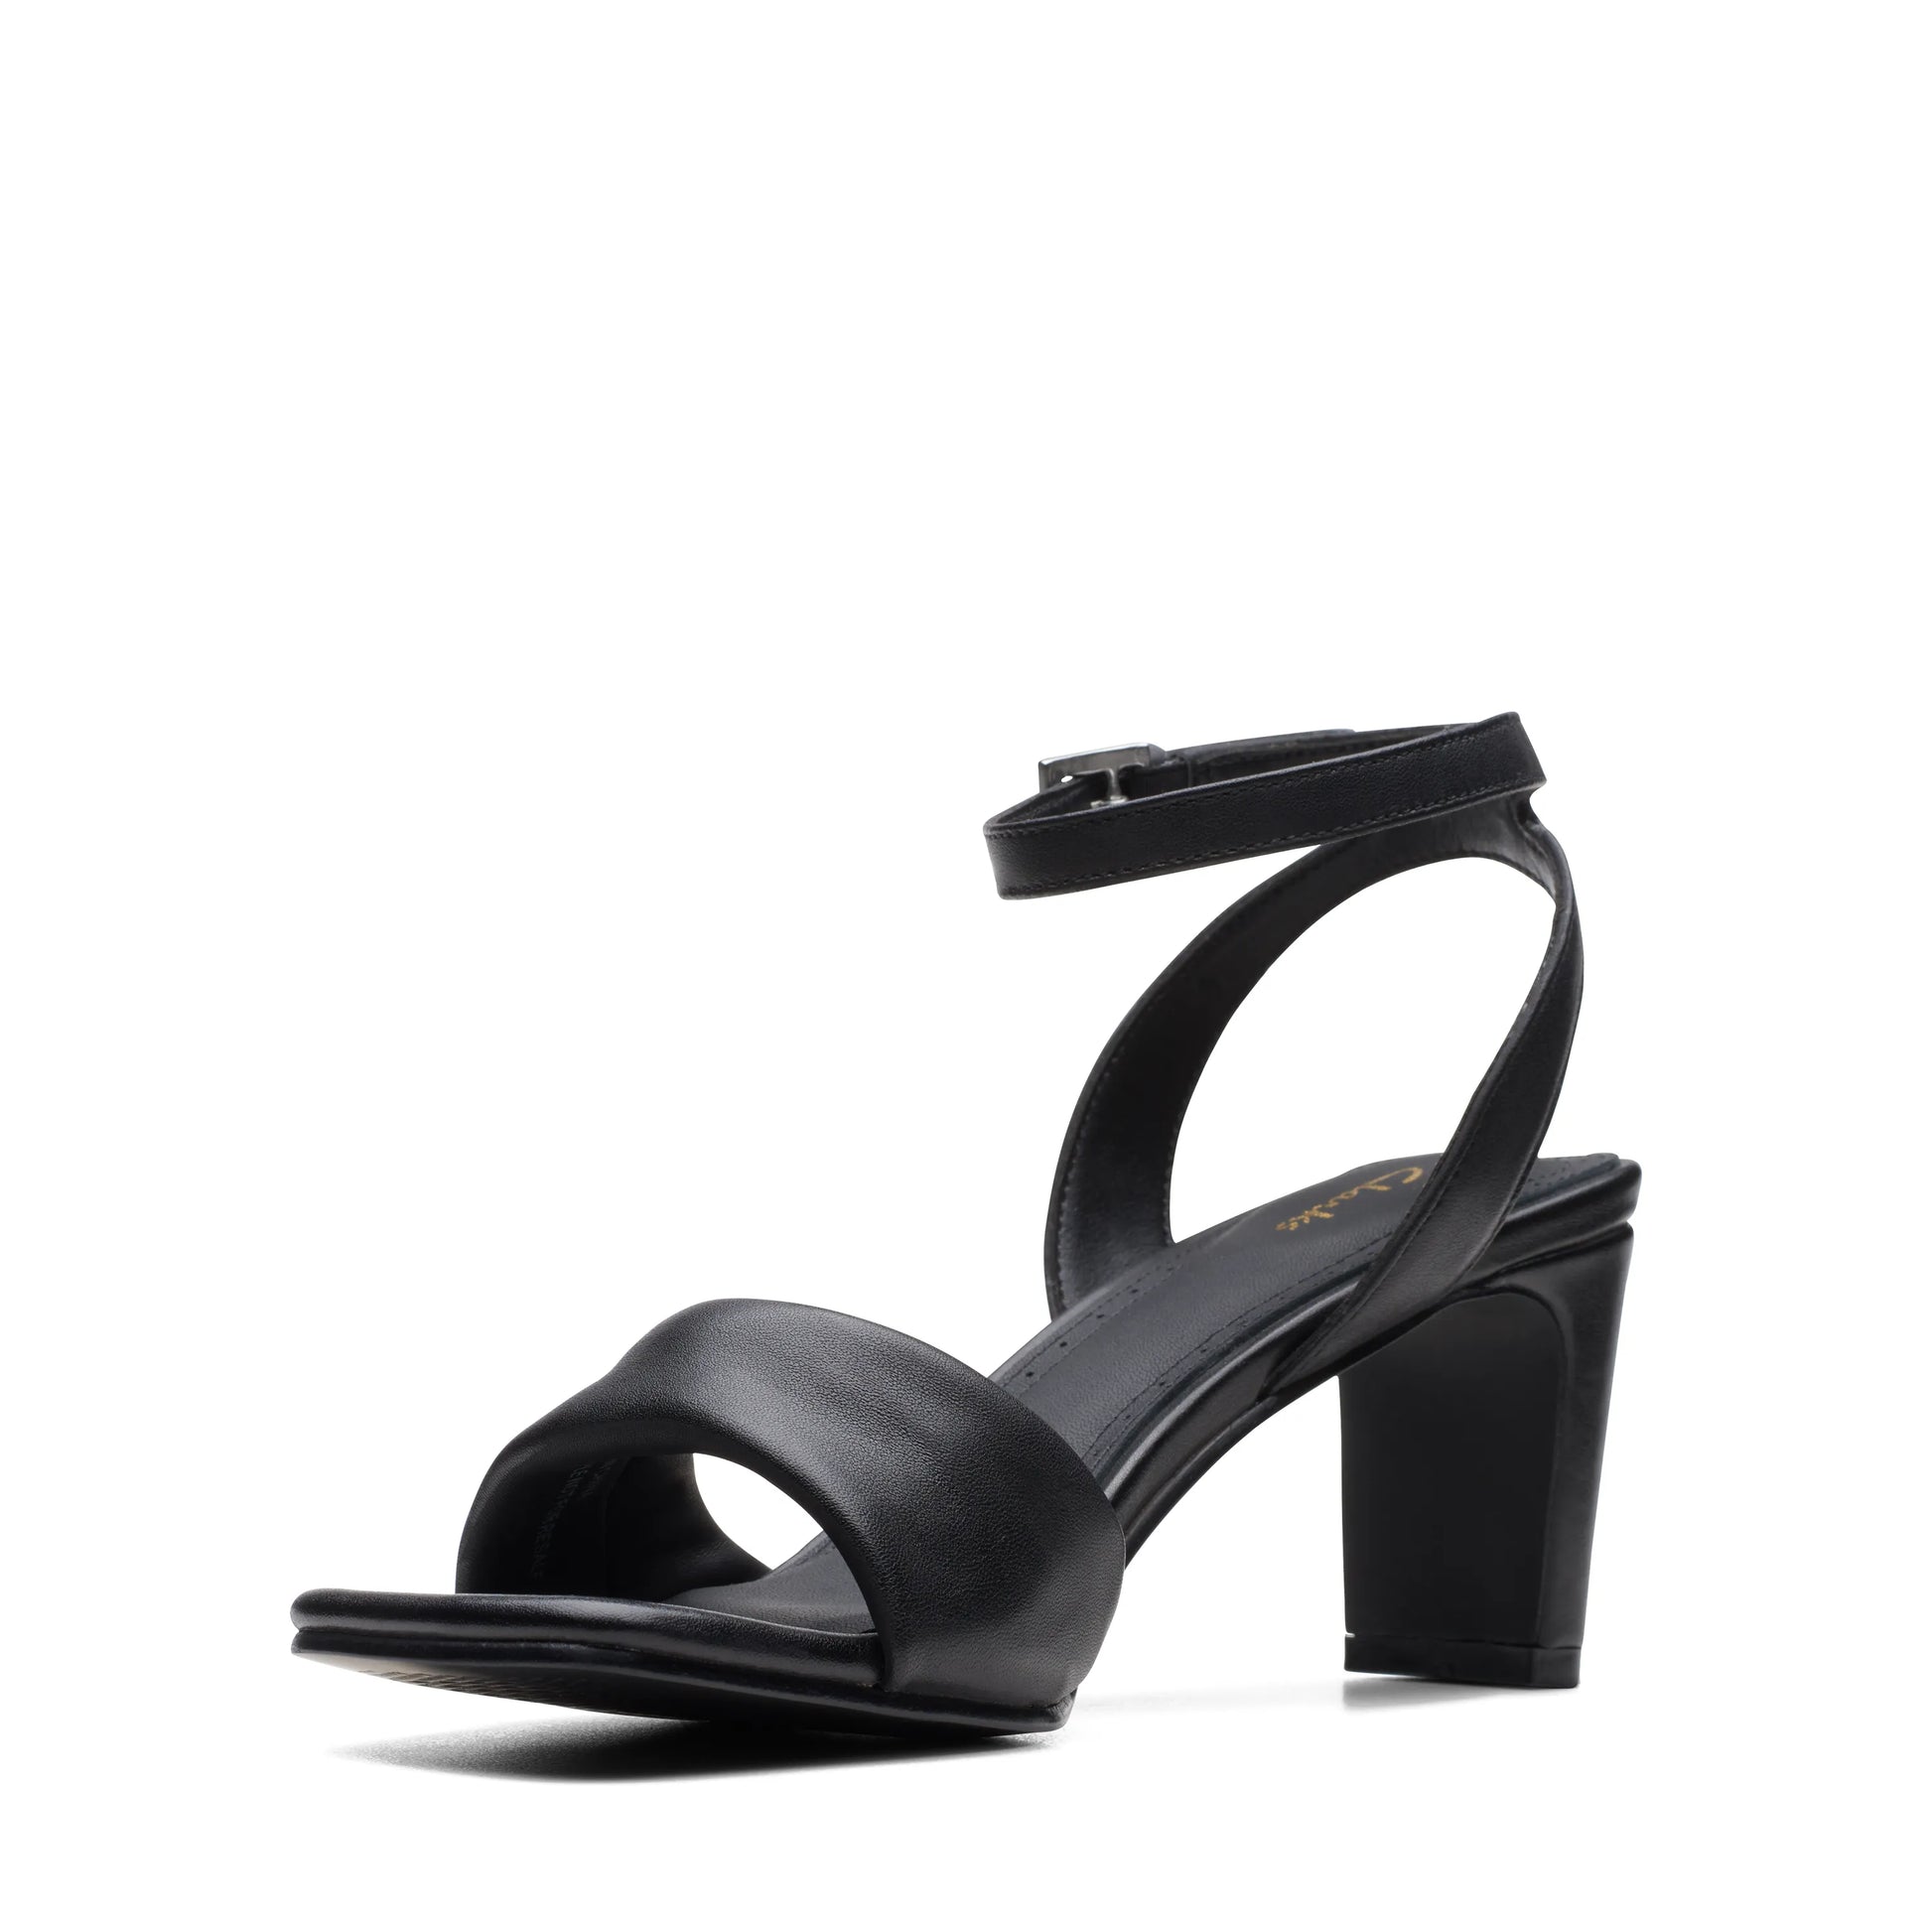 Sandalias Con Tiras De La Marca Clarks Para Mujer Modelo Seren Strap Black Leather En Color Negro